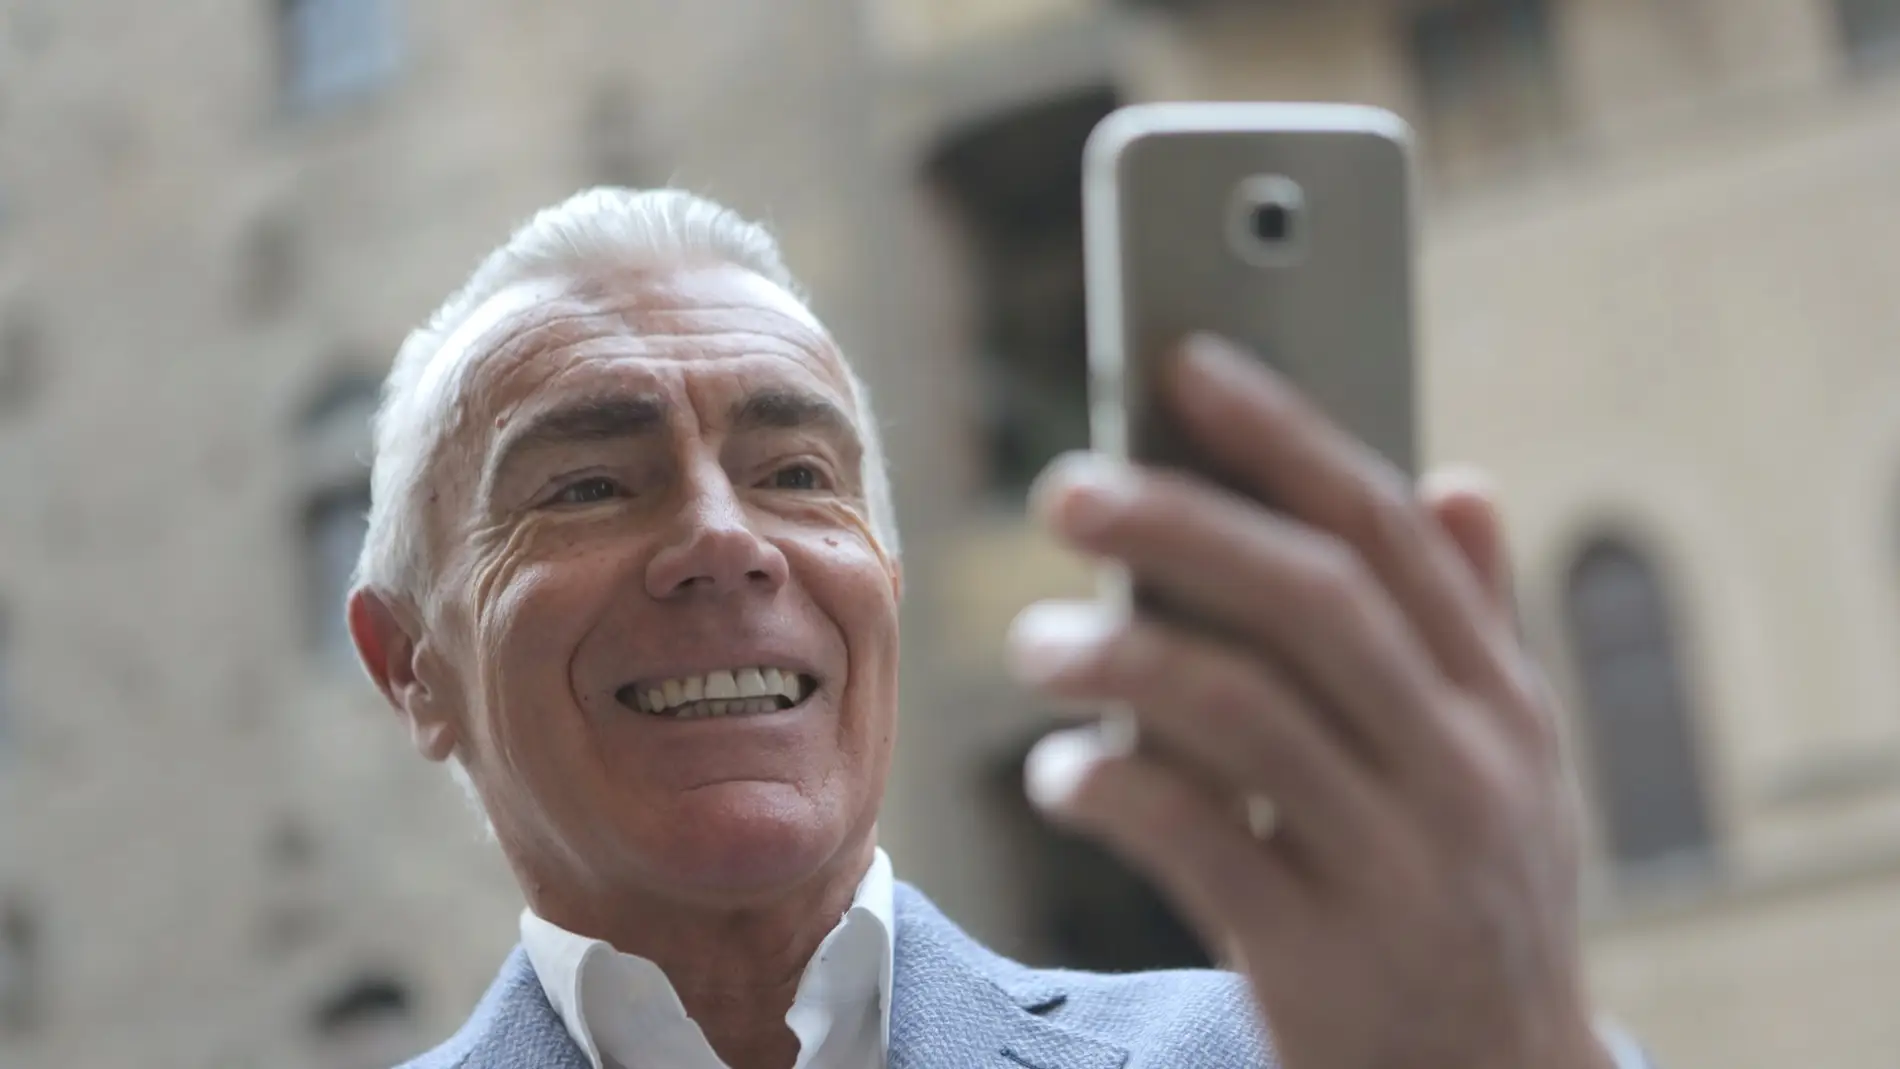 Un hombre hace una videollamada desde su teléfono móvil